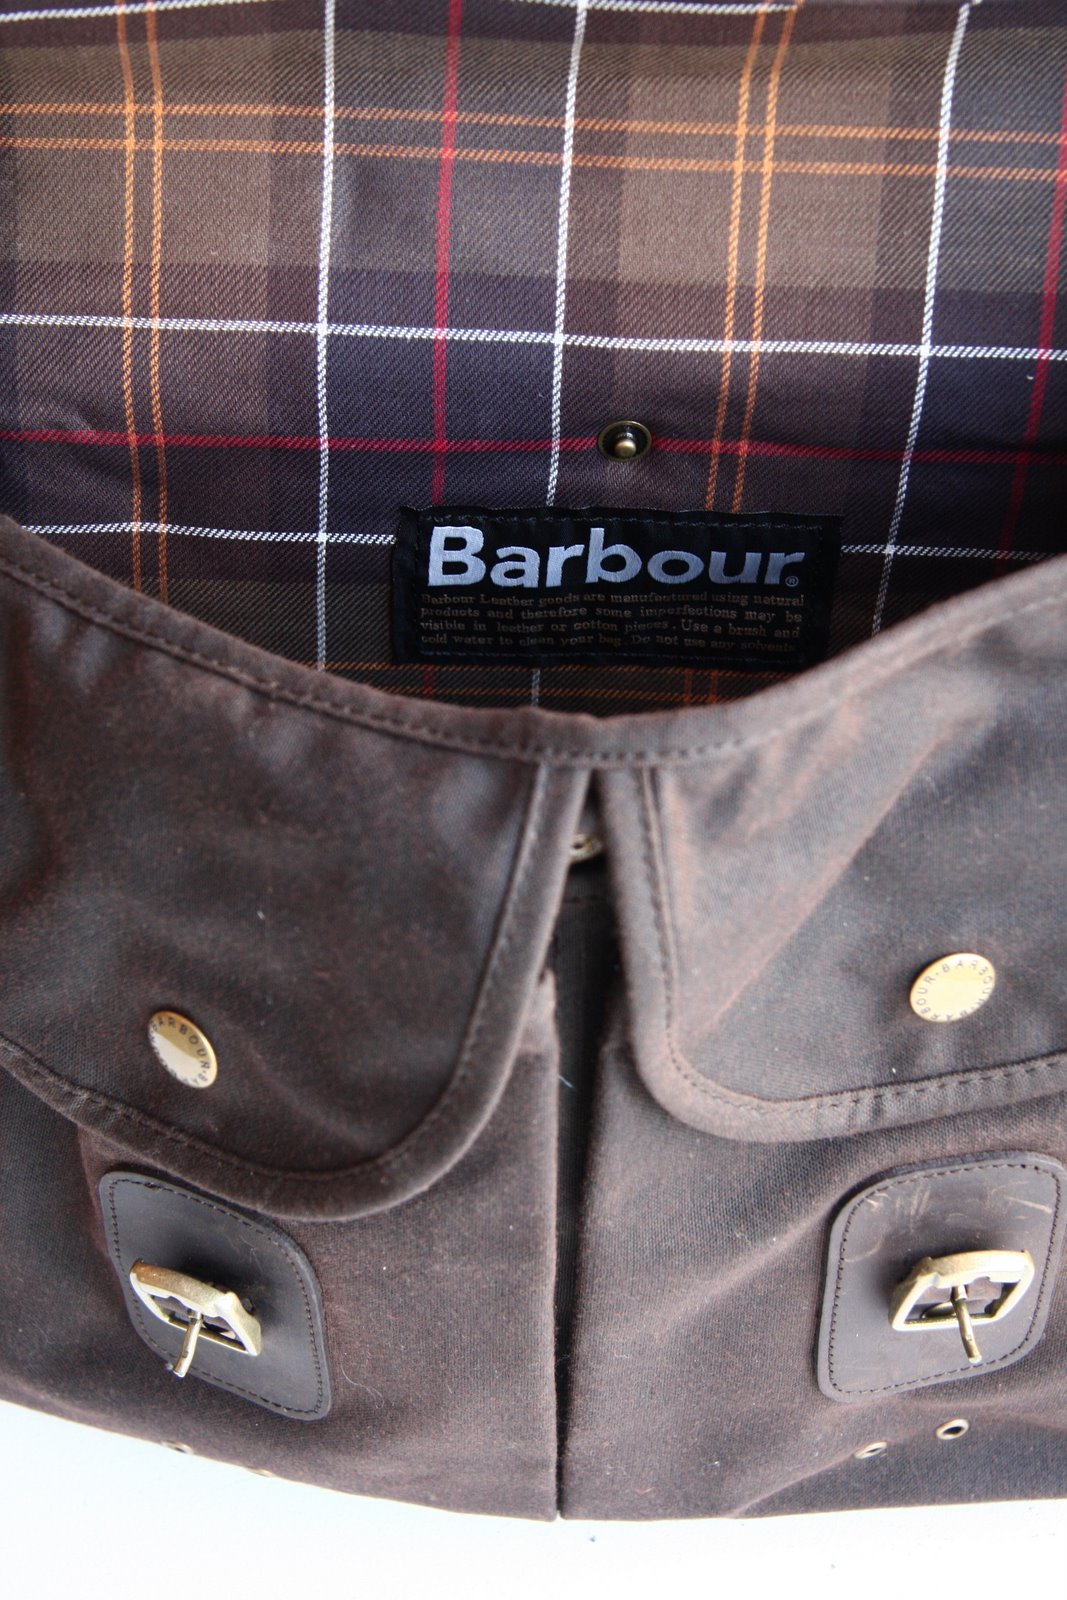 [Barbour+Bags+-+28.jpg]